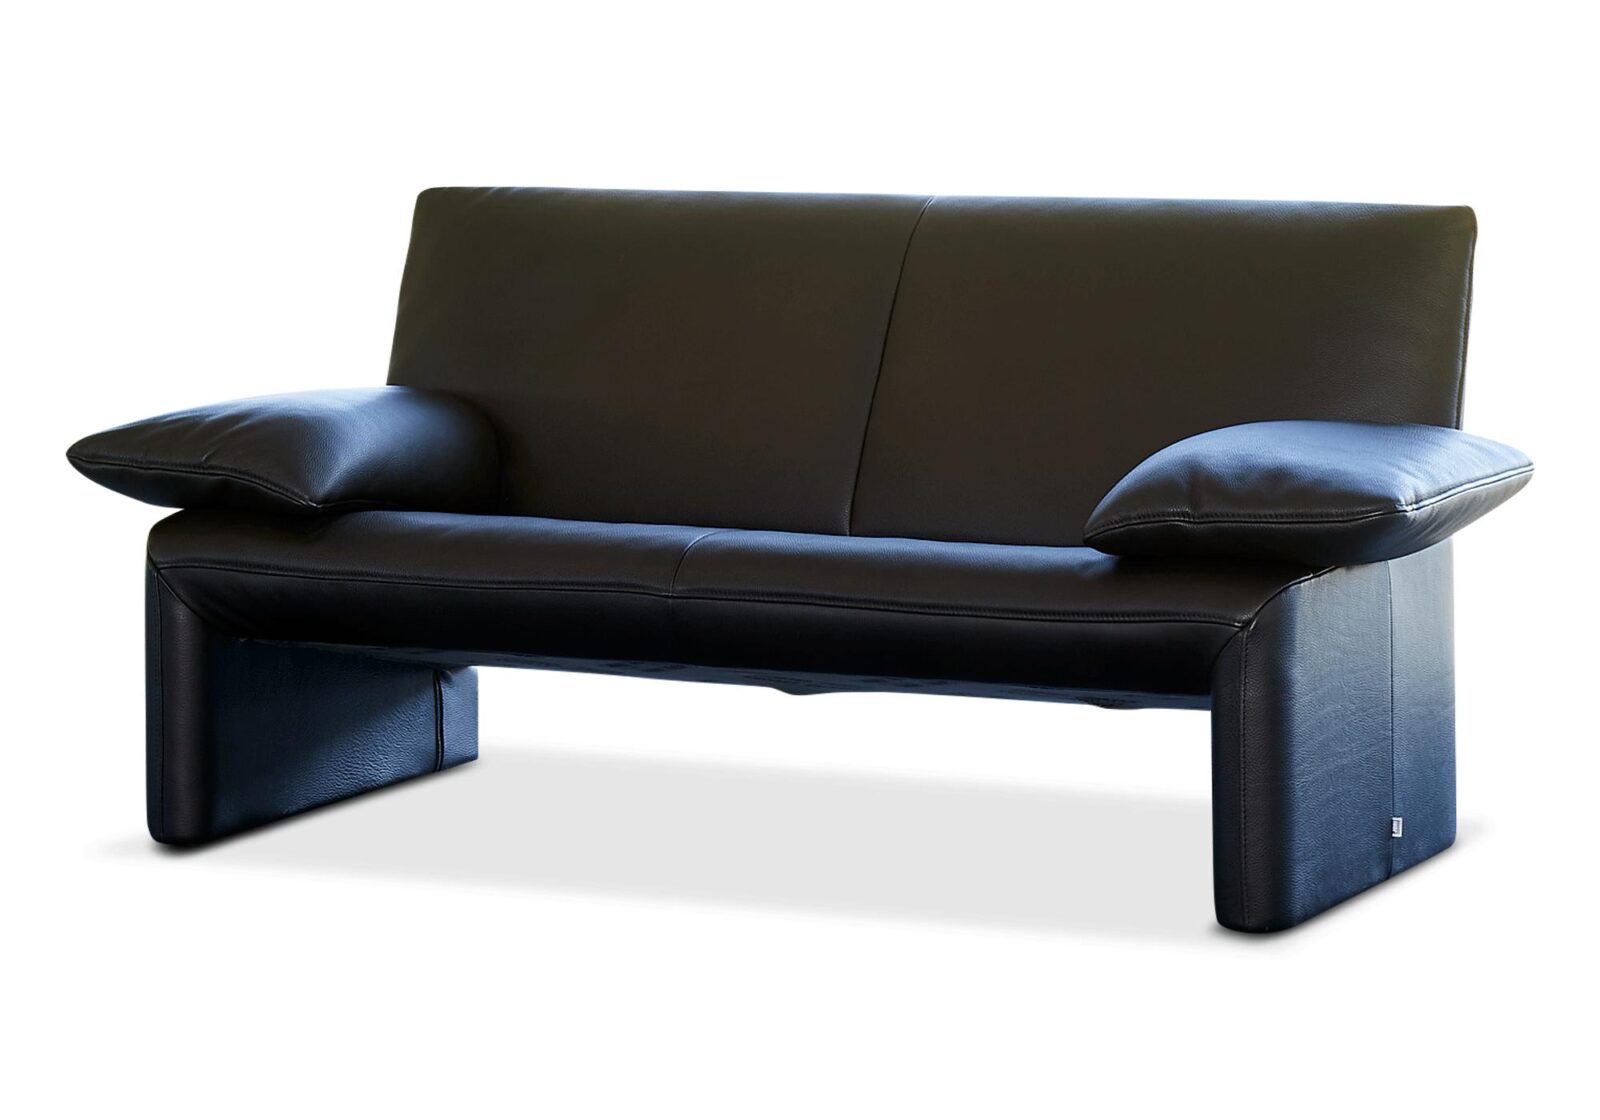 2.5er Sofa mit verstellbaren Armlehnen. Bezug: Leder. Farbe: Schwarz. Erhältlich bei Möbel Gallati.